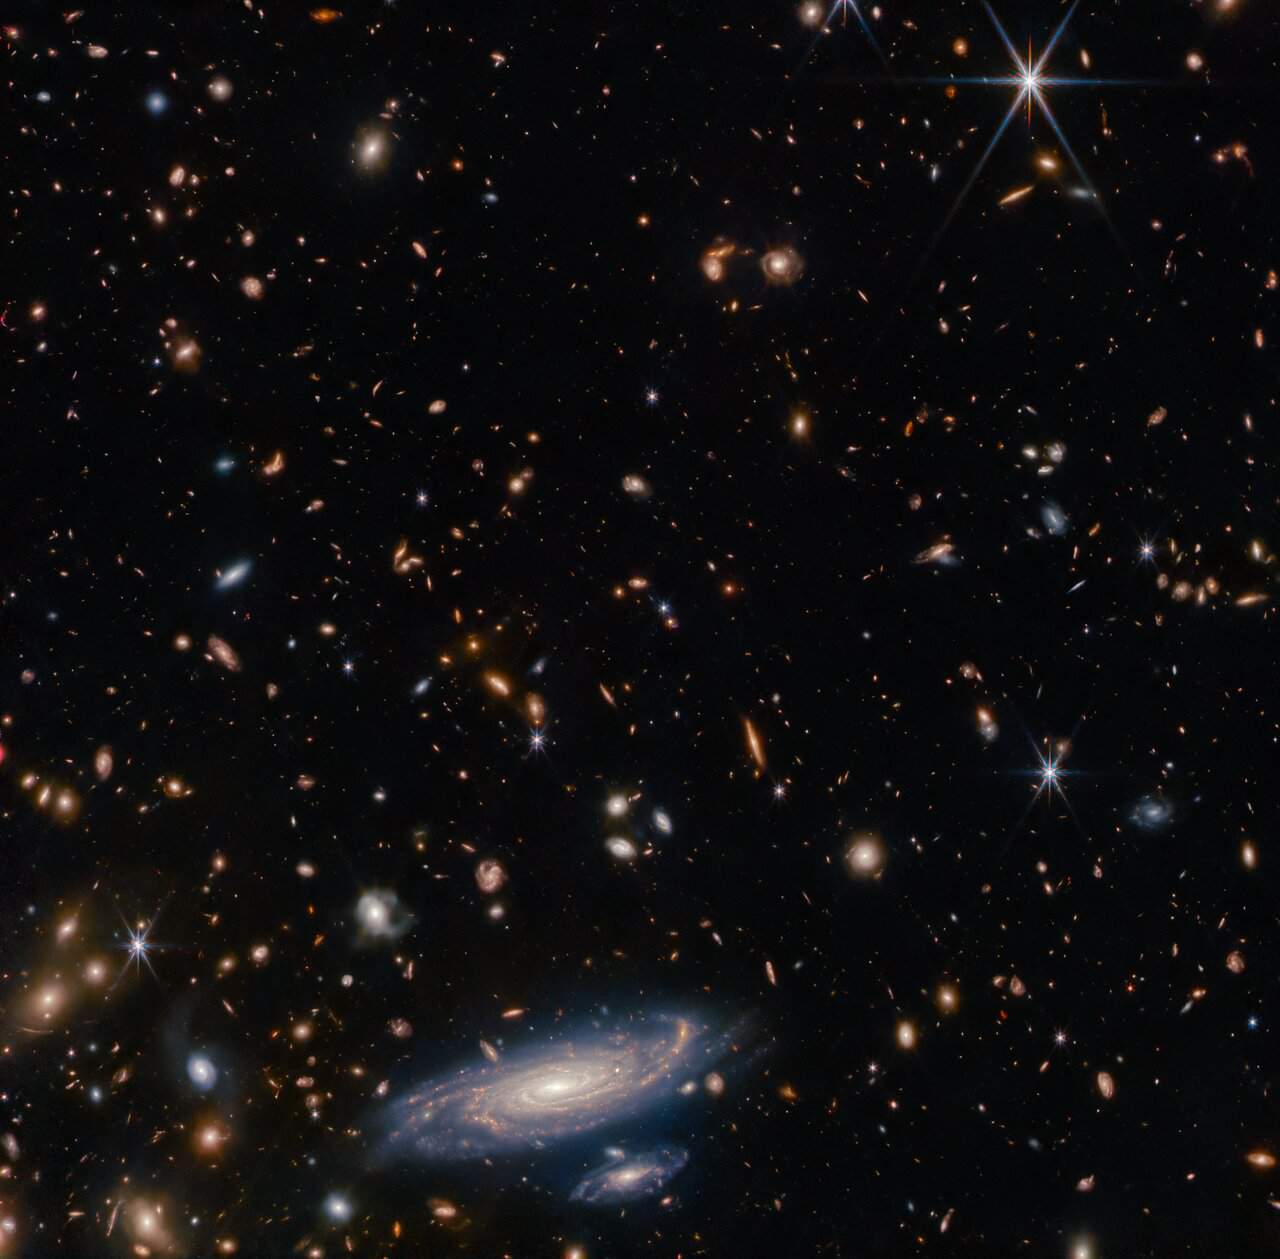 ジェイムズ・ウェッブ宇宙望遠鏡が10億光年離れた渦巻き銀河の詳細画像を公開